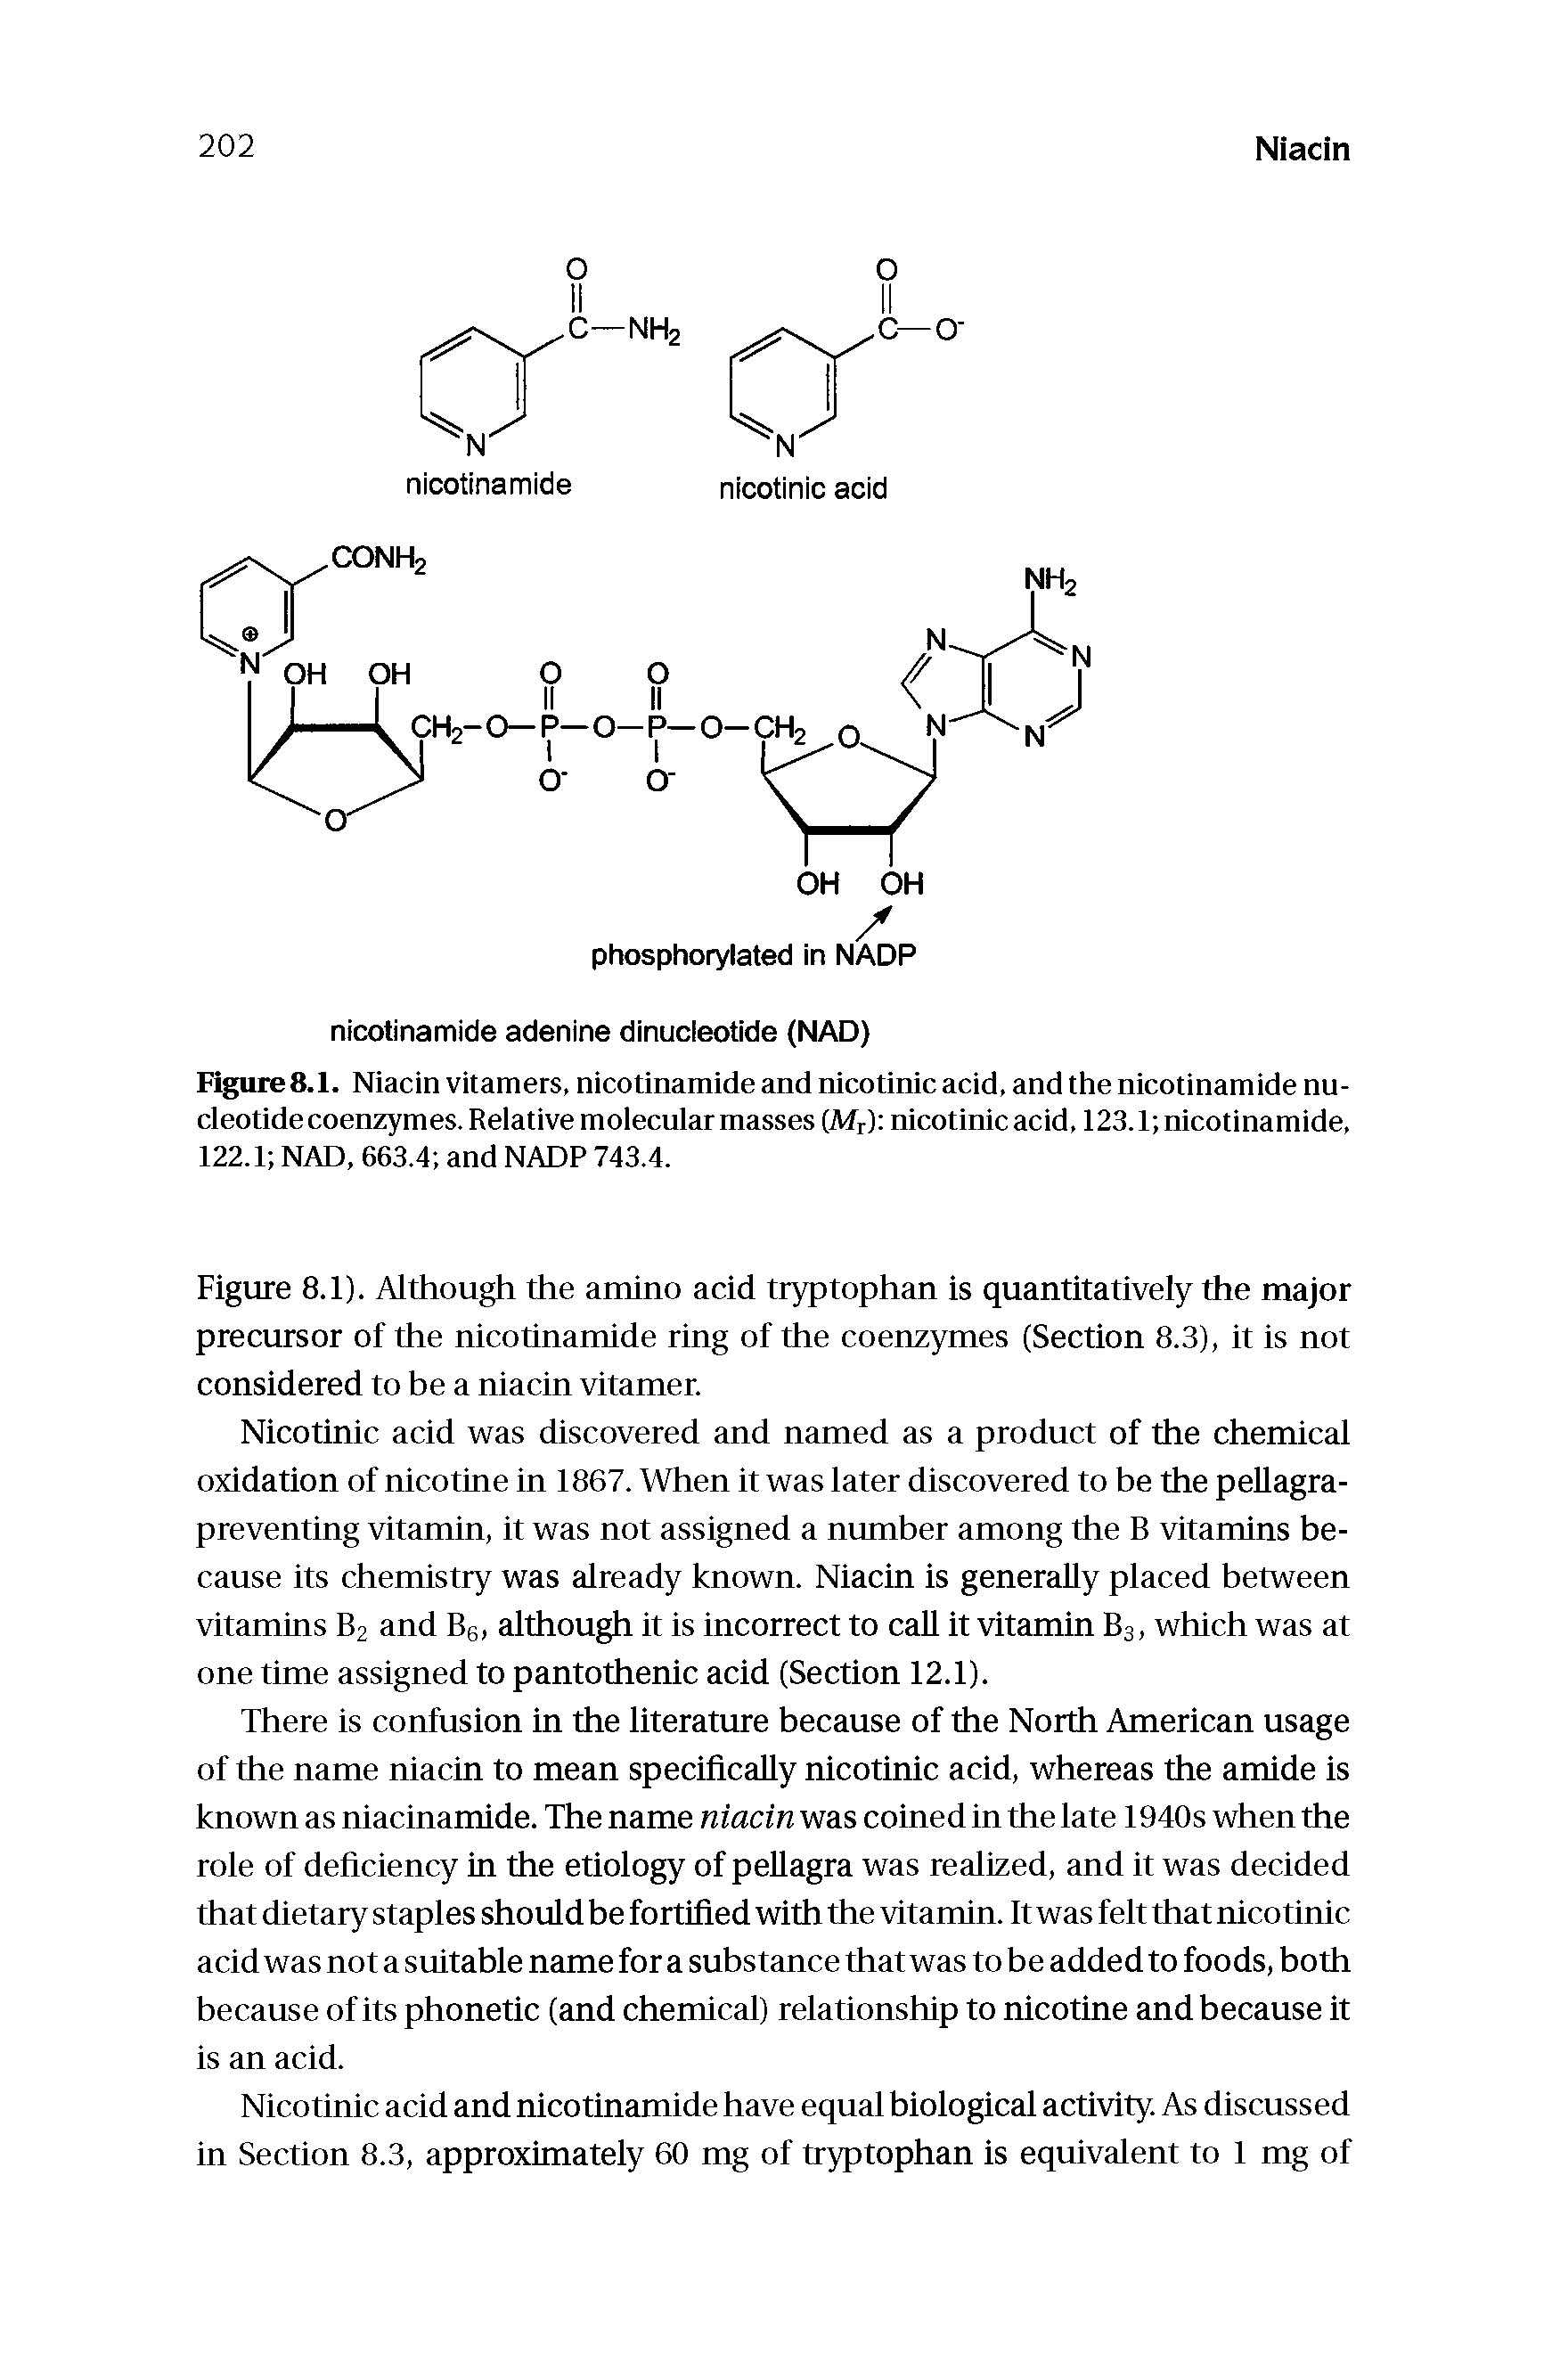 Figure 8.1. Niacin vitamers, nicotinamide and nicotinic acid, and the nicotinamide nucleotide coenzymes. Relative molecular masses (Mr) nicotinic acid, 123.1 nicotinamide, 122.1 NAD, 663.4 and NADP 743.4.